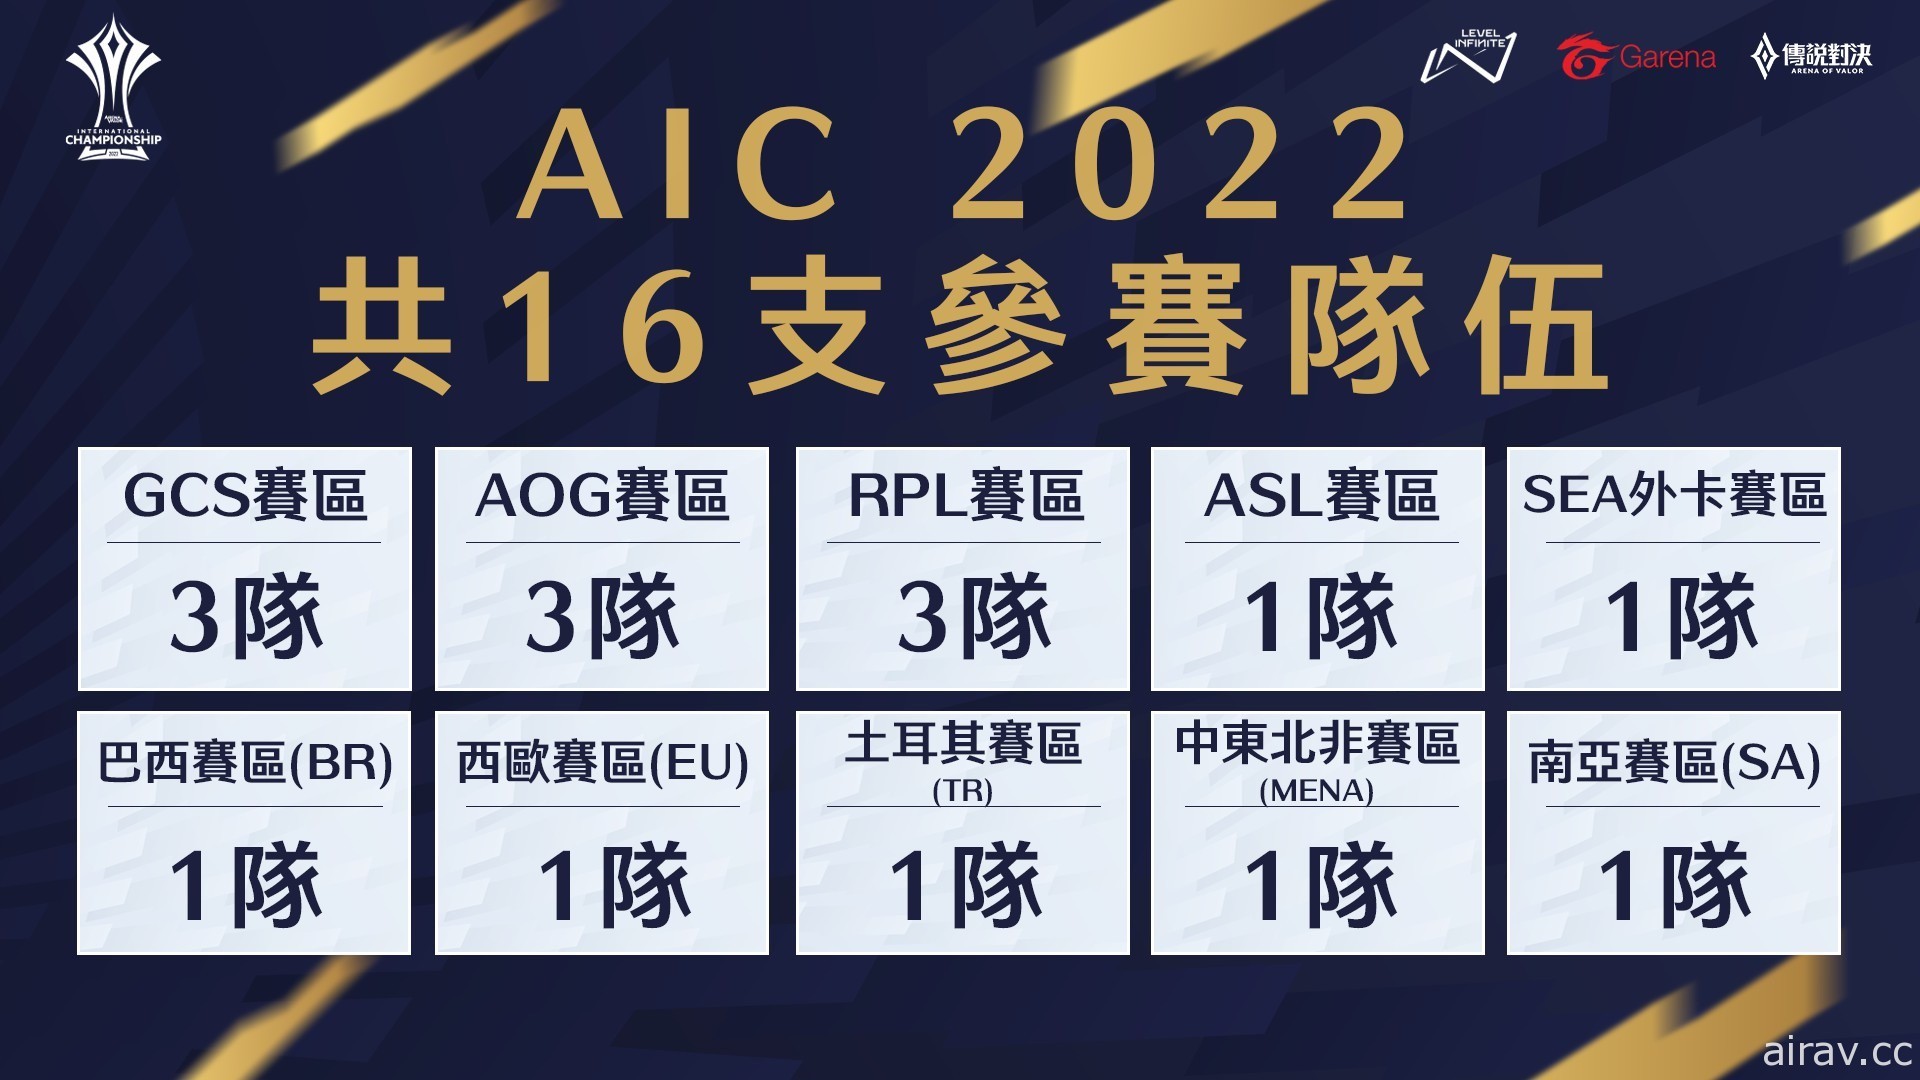 《傳說對決》總獎金池達 200 萬美元  AIC 2022 國際錦標賽 6 月登場